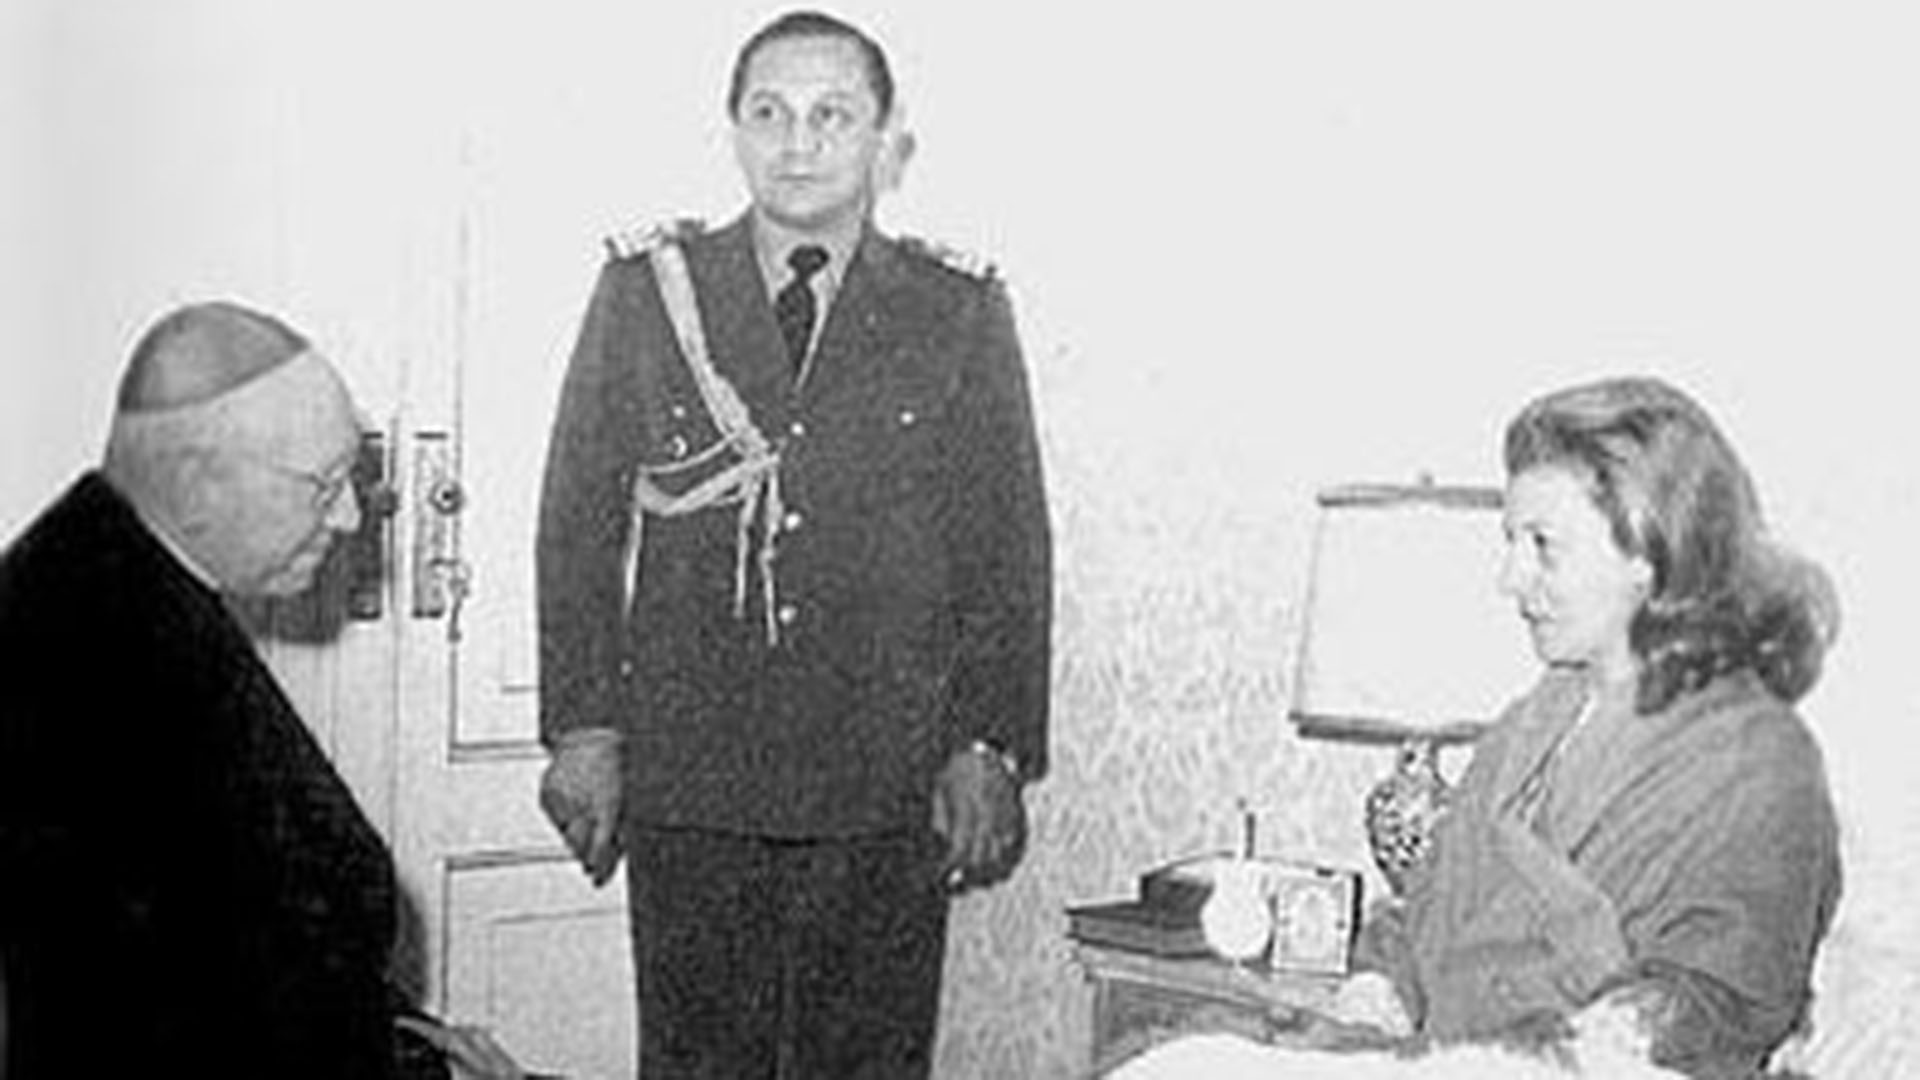 Los increíbles recuerdos del edecán de Isabel: López Rega y su “resucitación” de Perón y Massera eligiendo a Videla al frente del Ejército